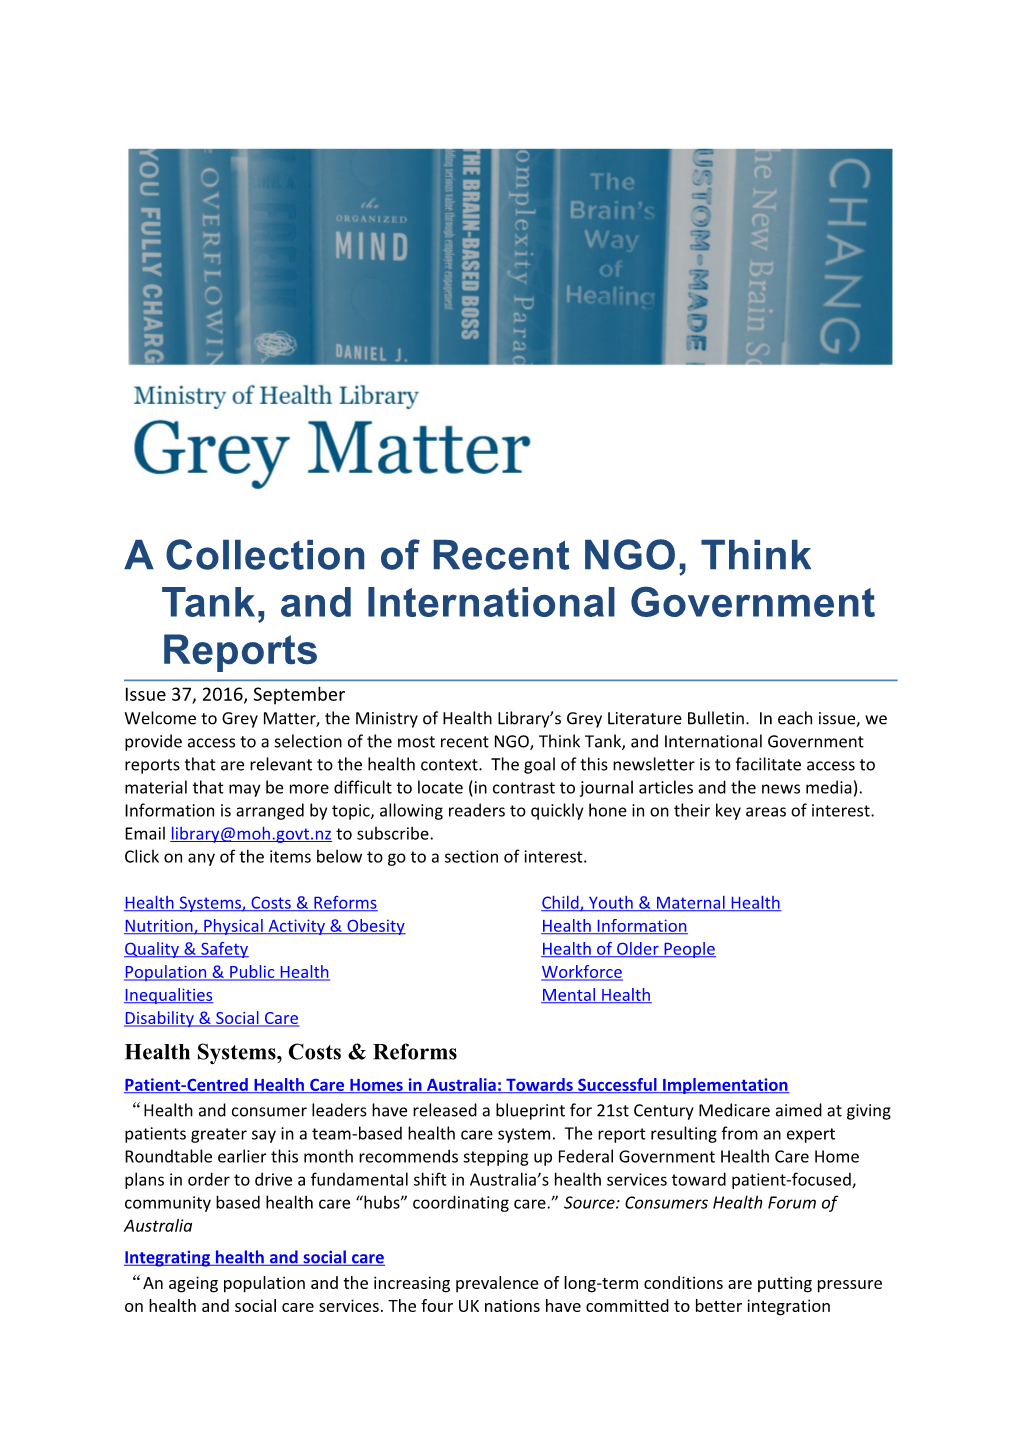 Grey Matter, Issue 37, September 2016